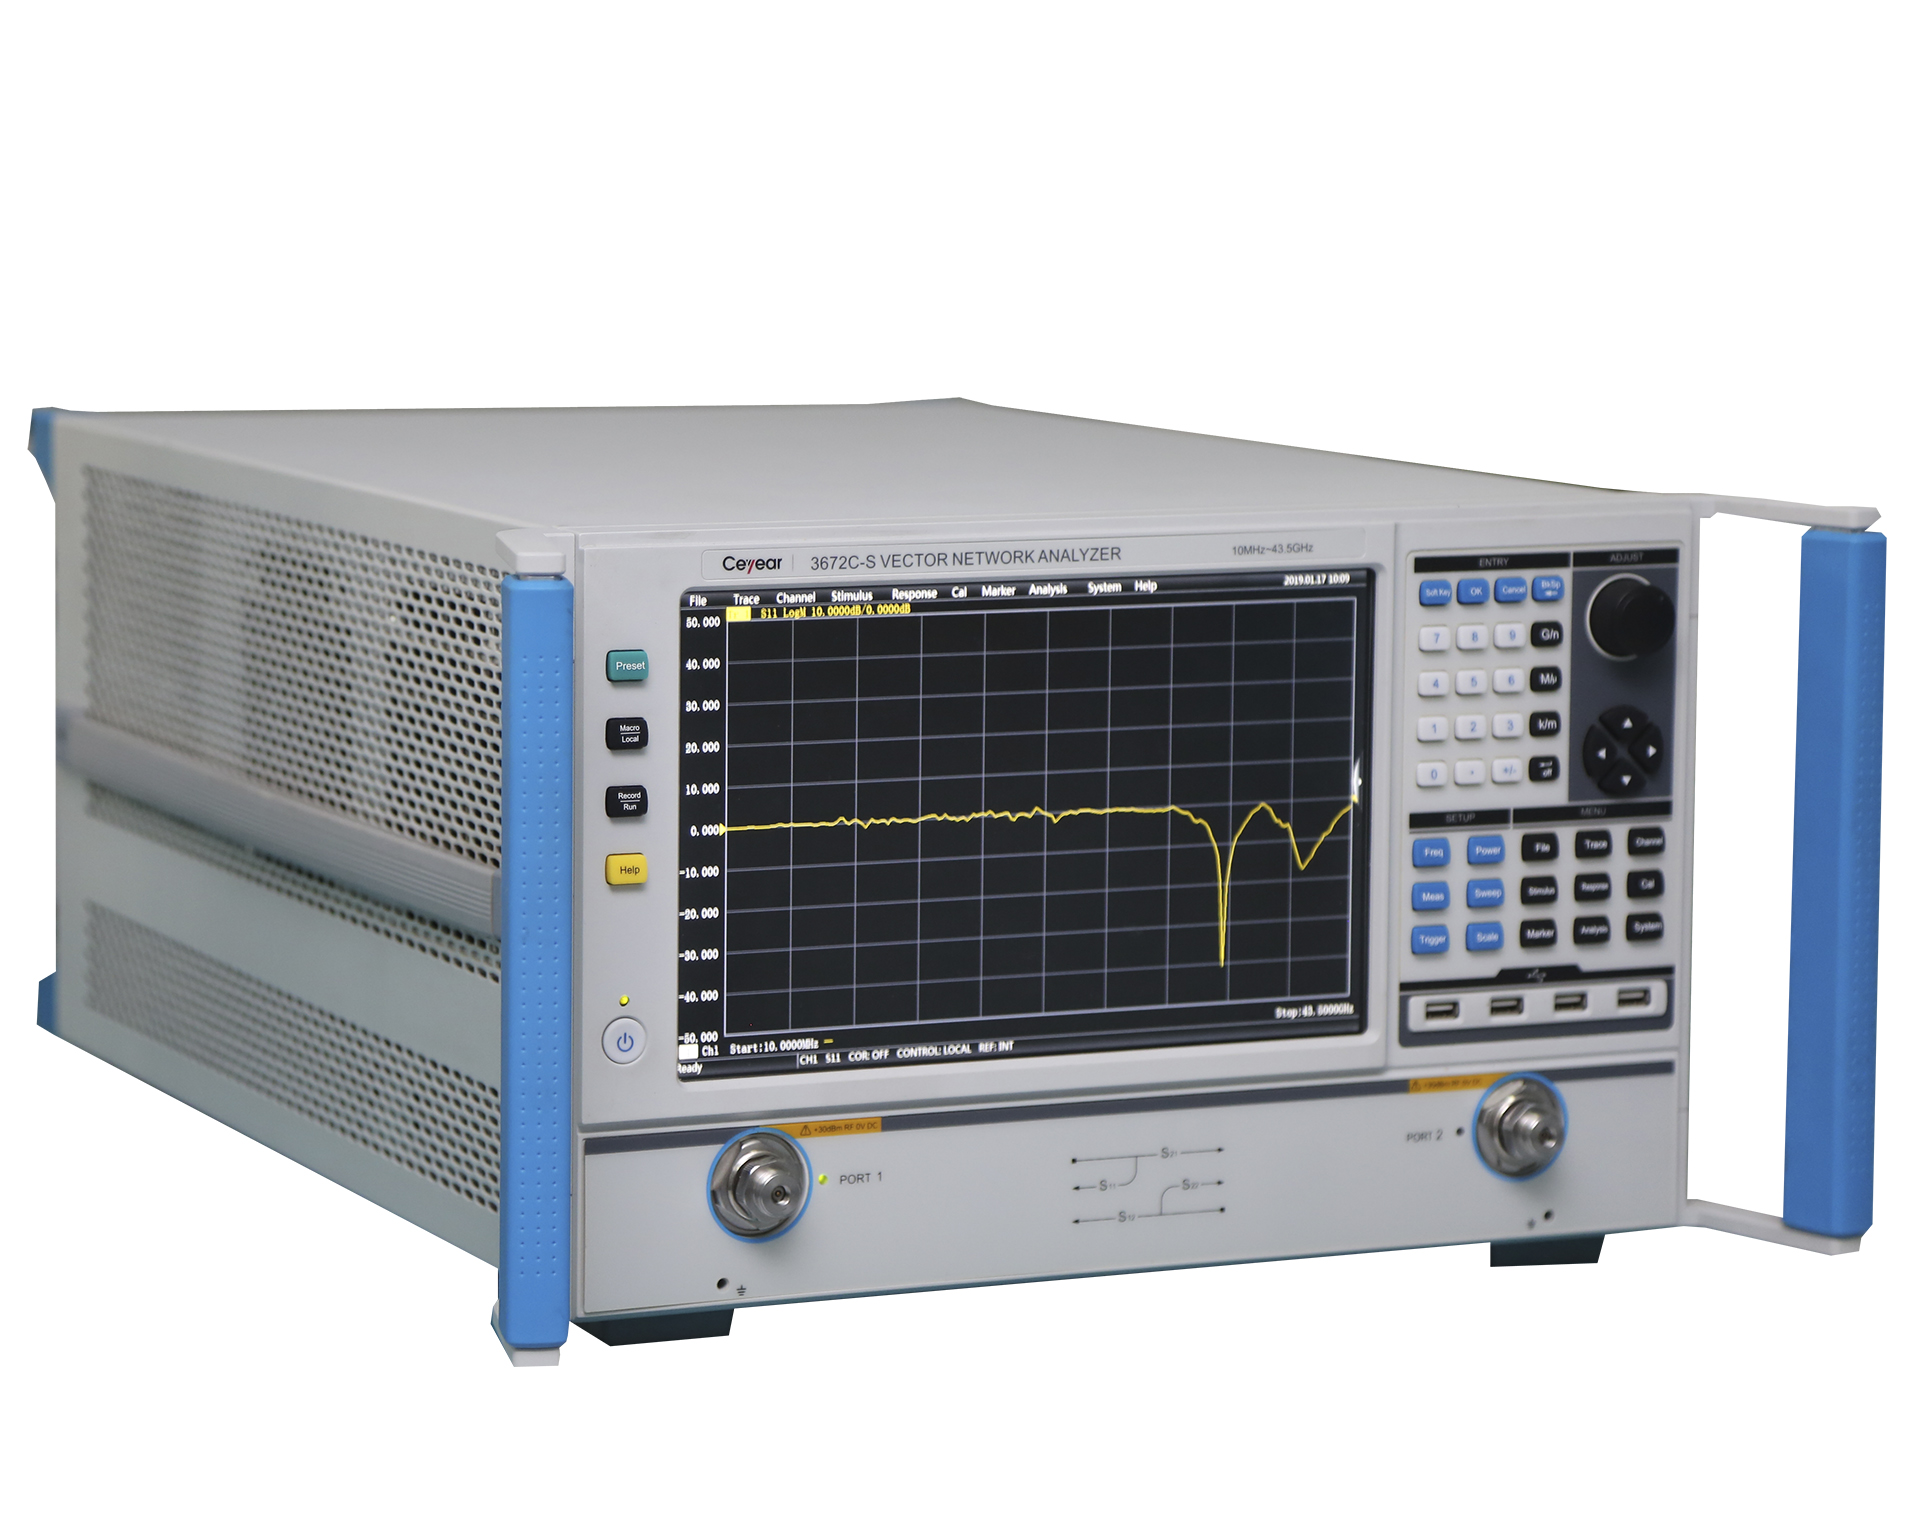 Векторный анализаторCeyear серии 3672-S: 3672A/B/Cс диапазоном частот от 10 МГц до 43,5 ГГц